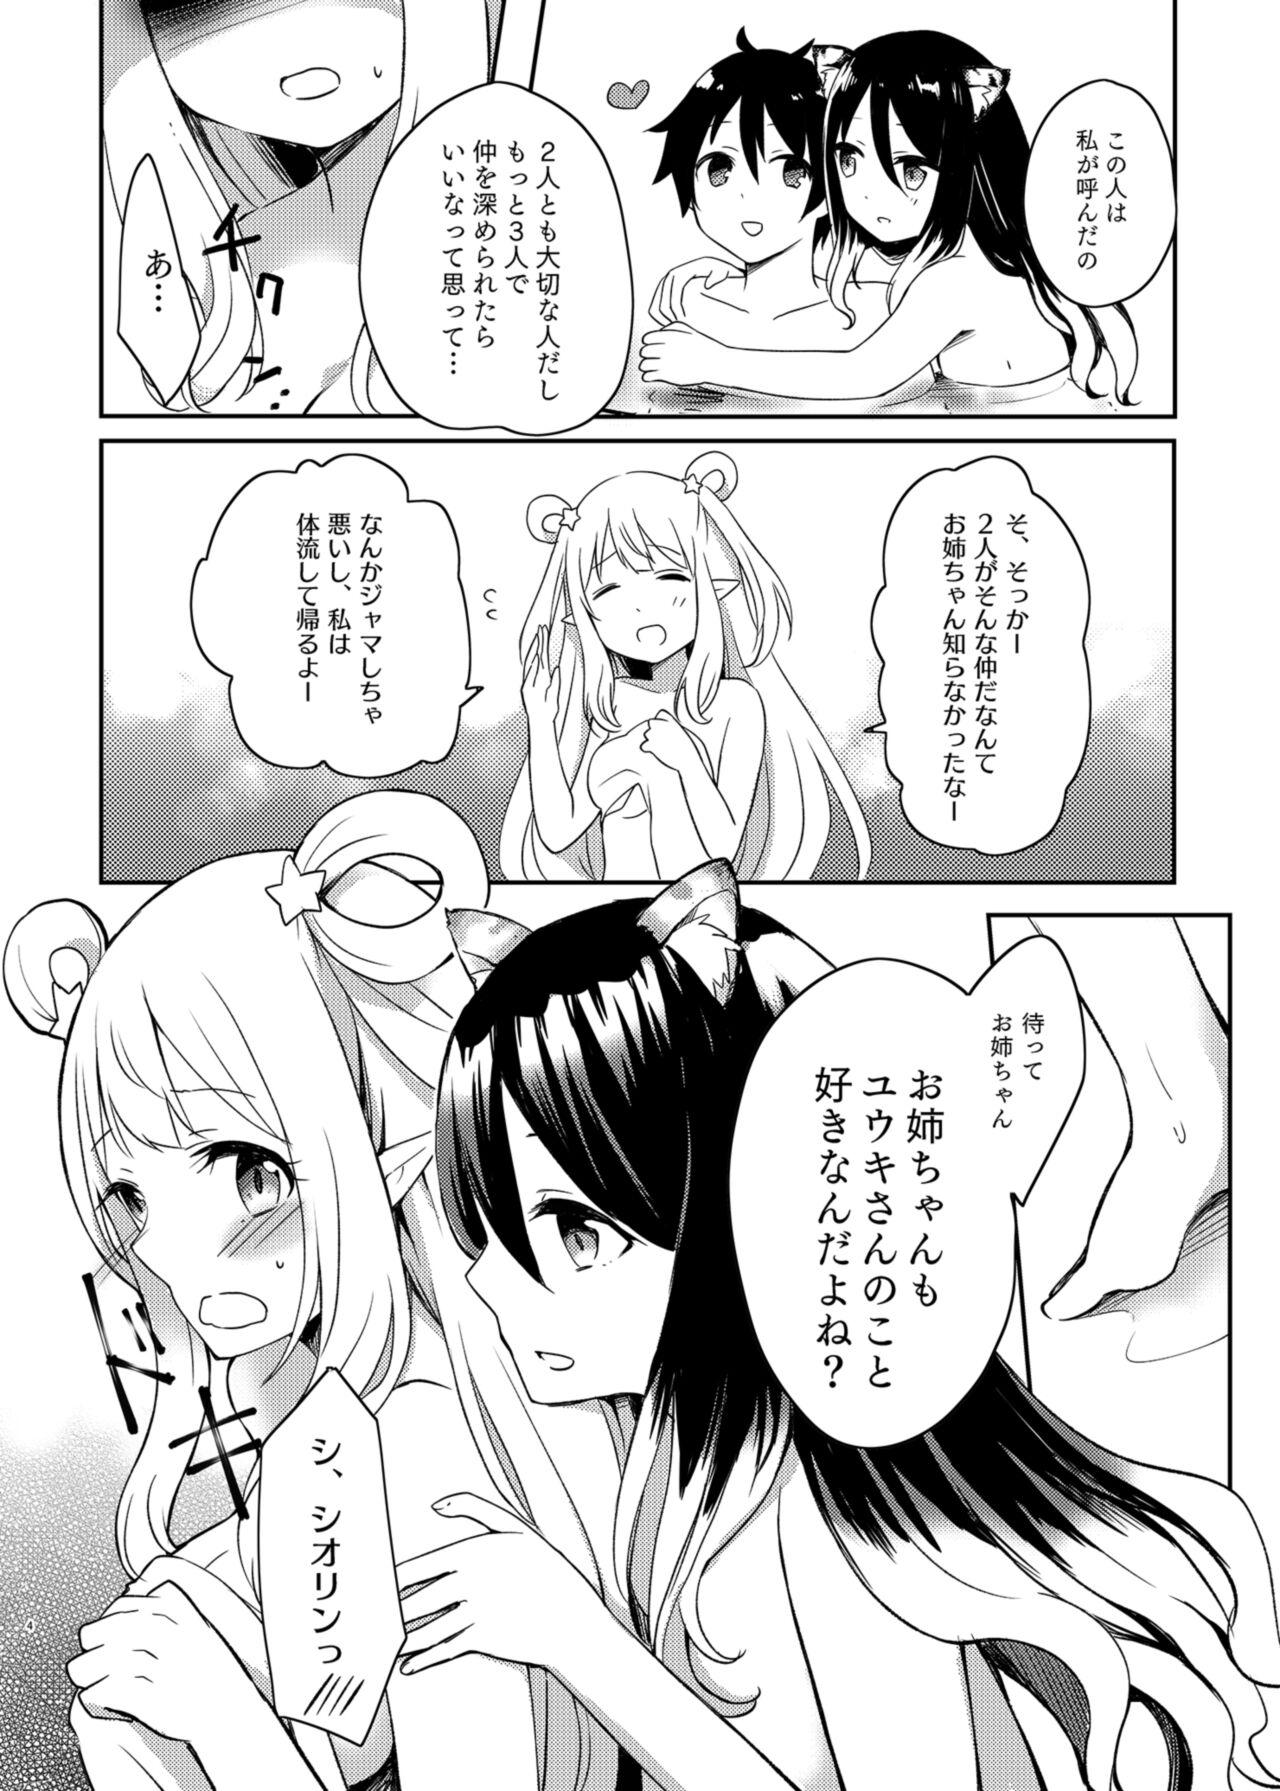 Oldman Hatsune to Shiori no Yukemuri Daisakusen - Princess connect Sextape - Page 4